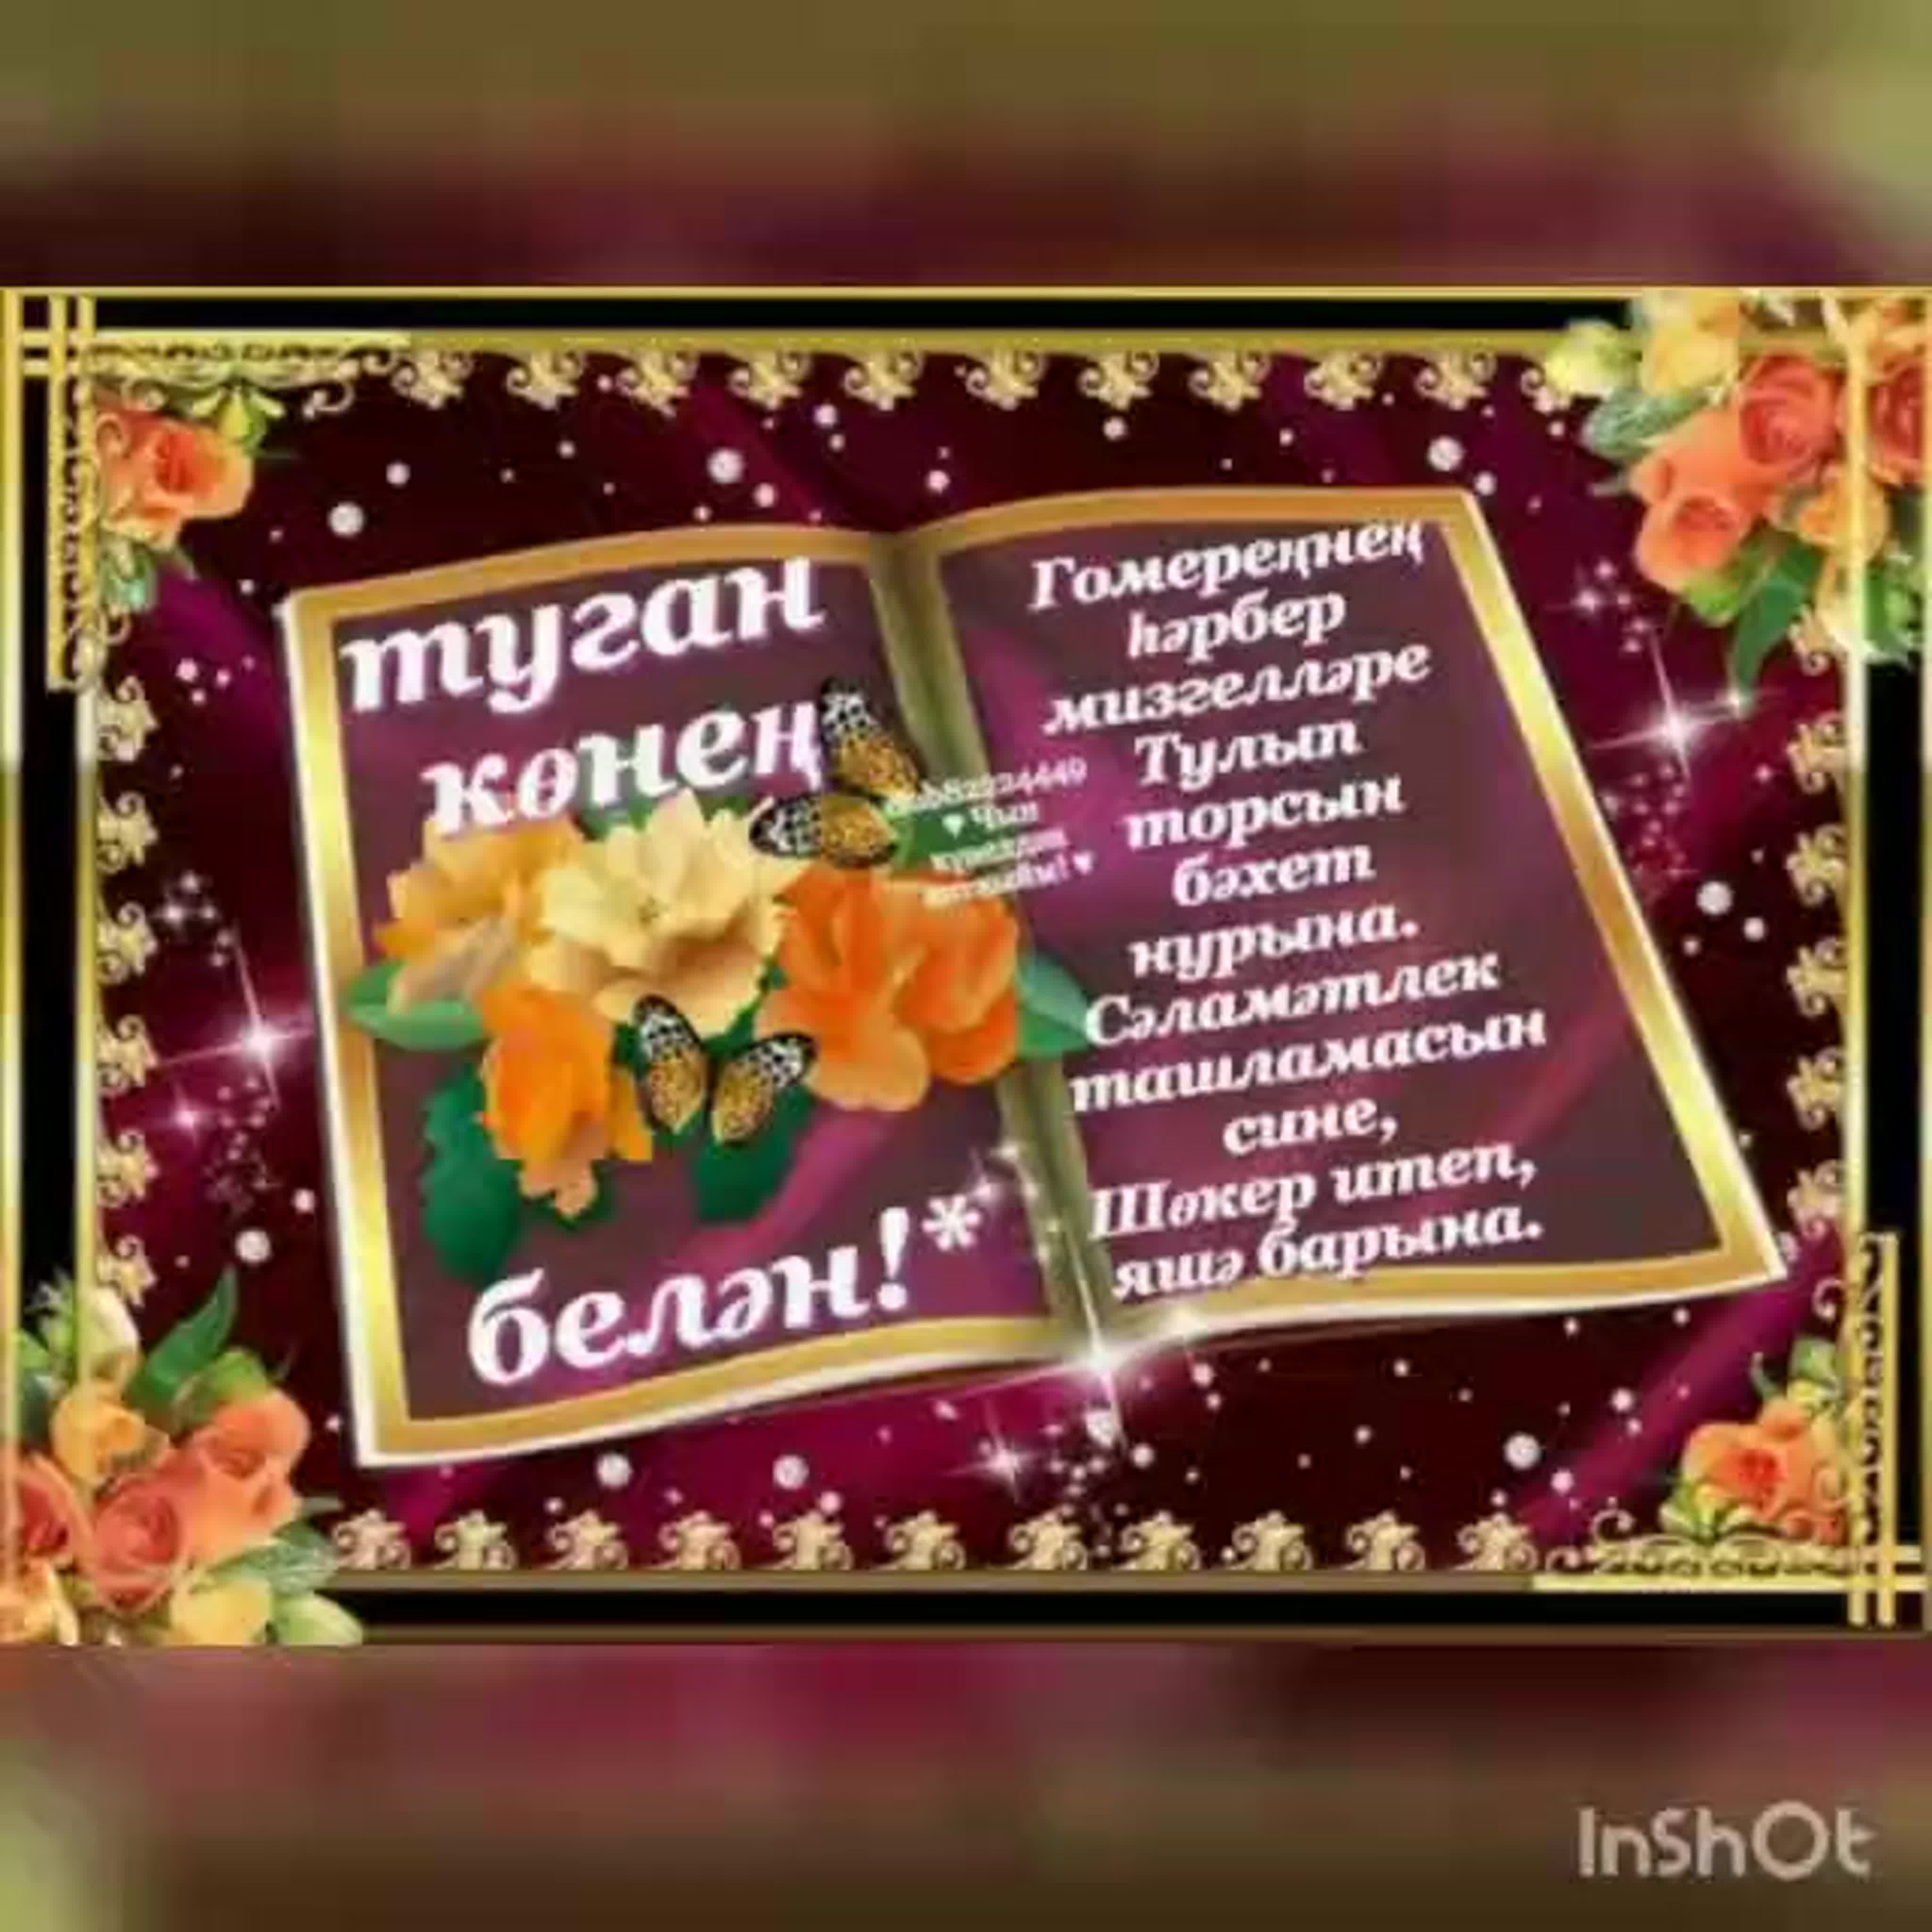 Поздравления с юбилеем на татарском языке с переводом на русский